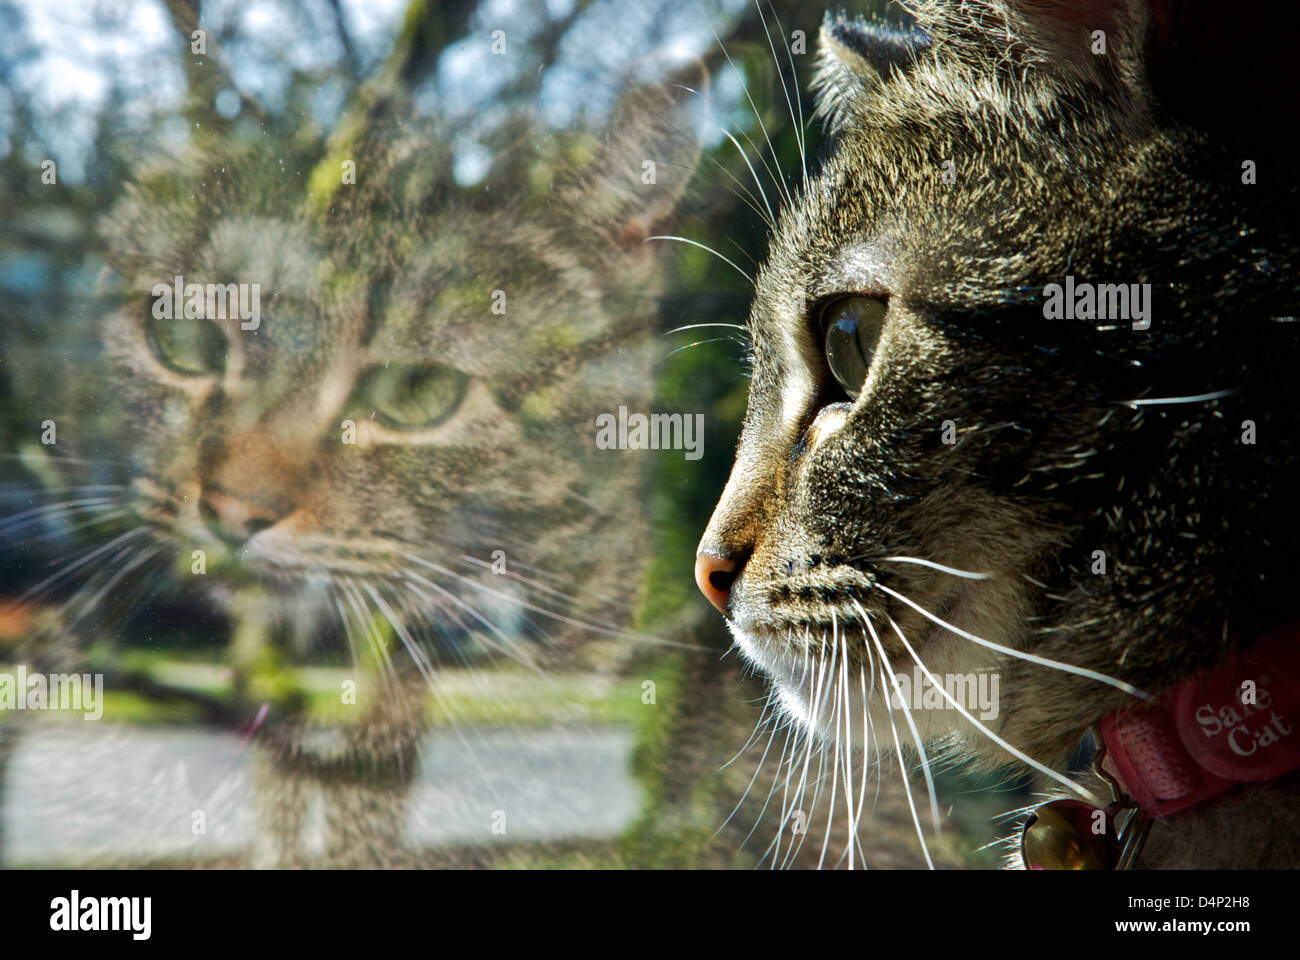 La riflessione shorthair domestico gatto tabby in doppia finestra riquadro Foto Stock